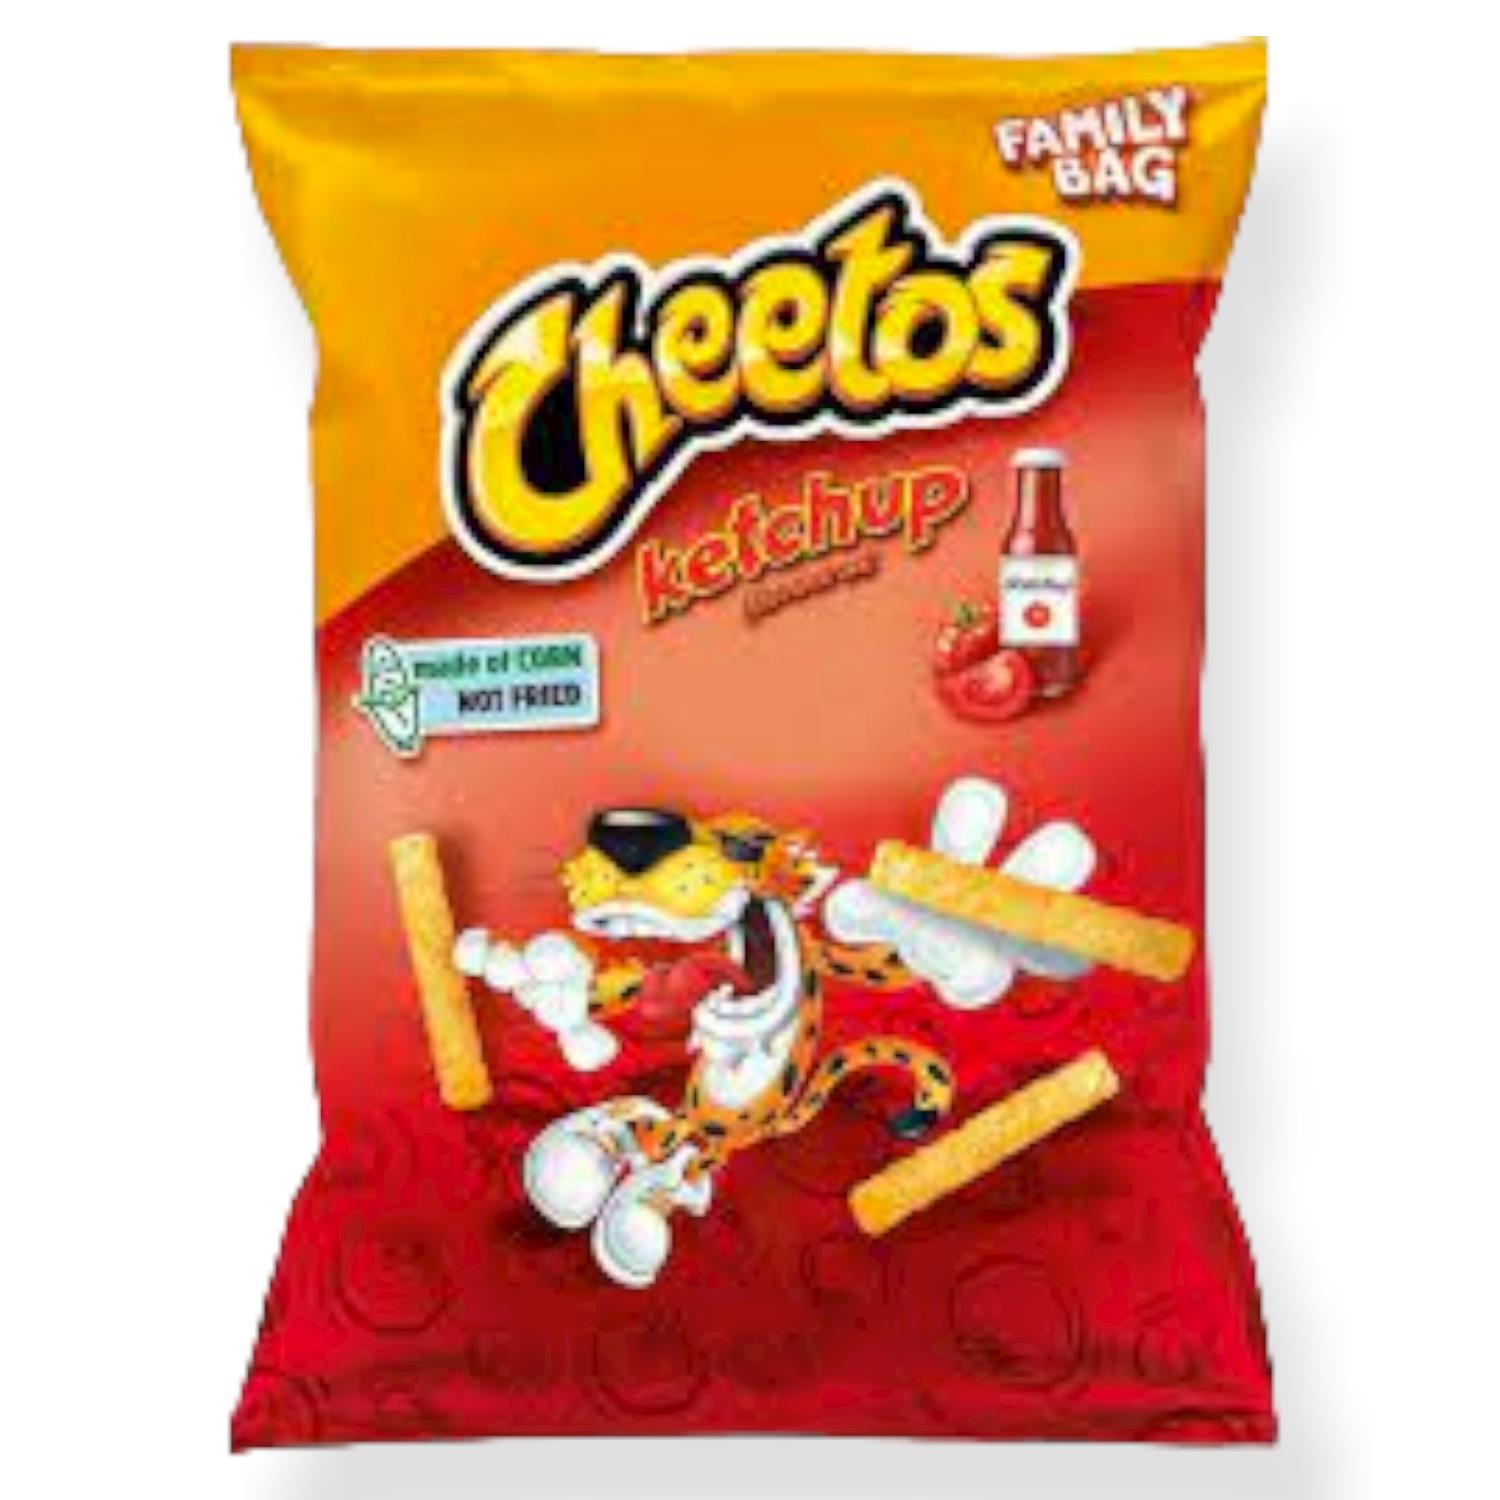 Cheetos Ketchup 150g